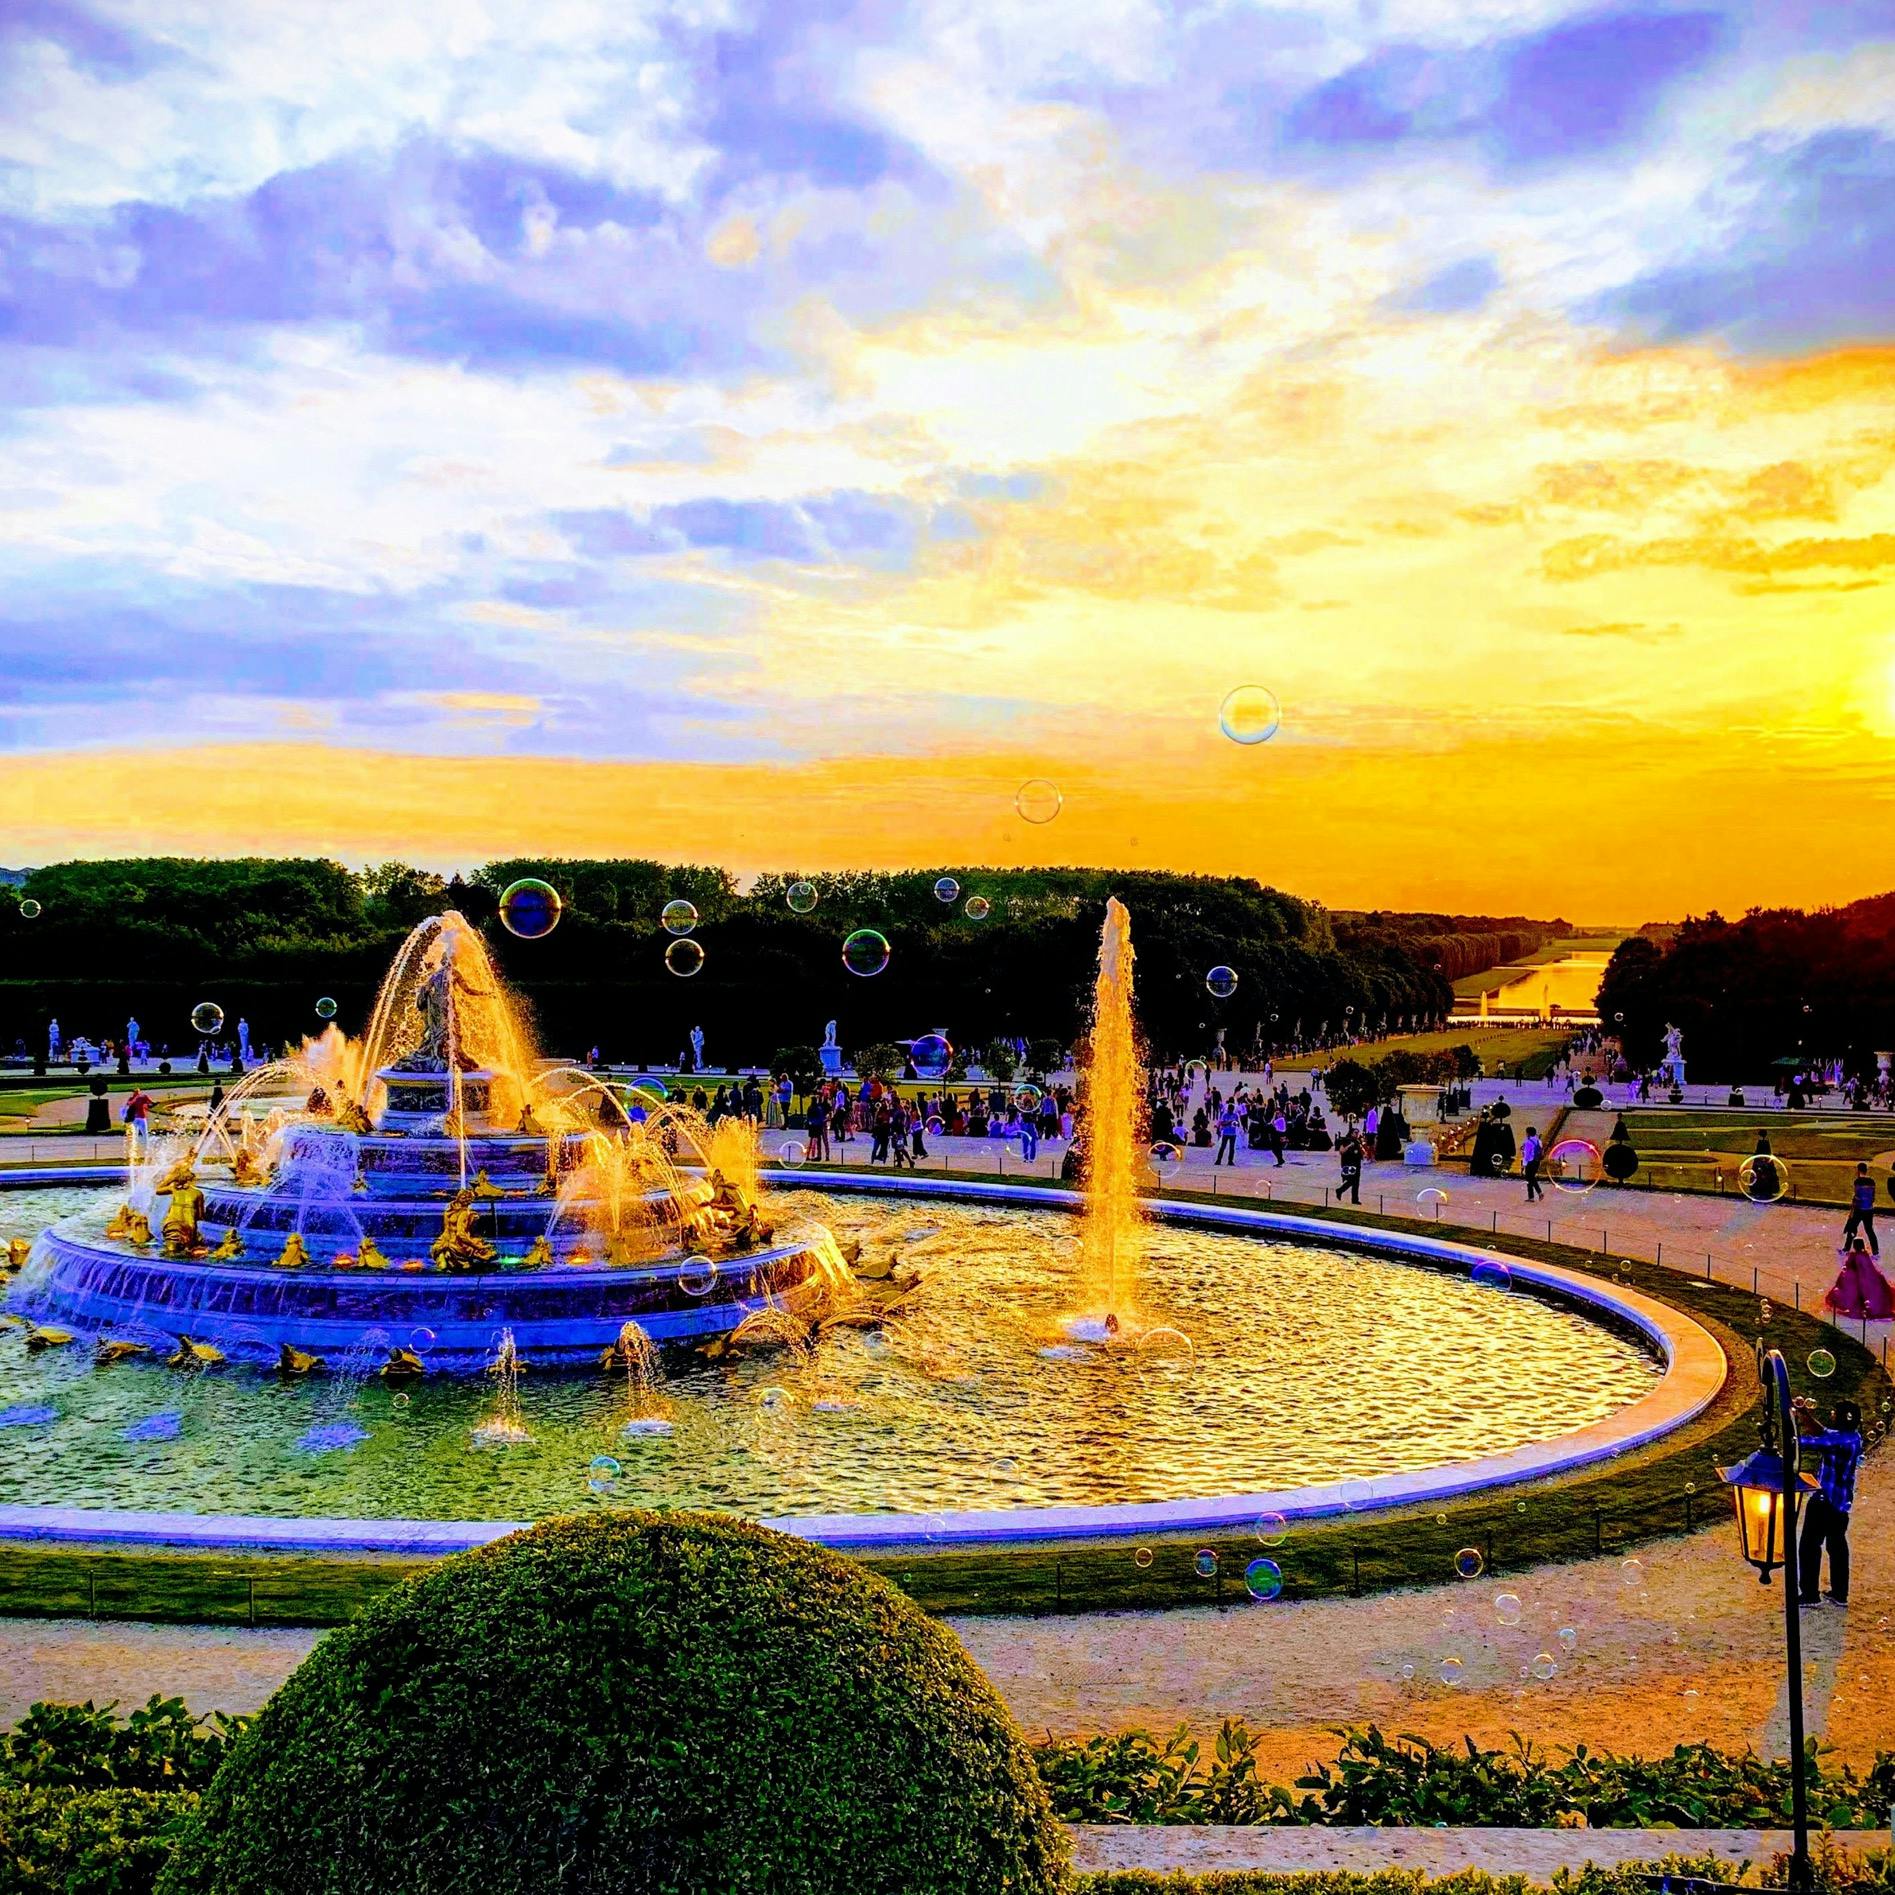 ヴェルサイユ宮殿 Chateau De Versailles ベルサイユ宮殿 の投稿写真 感想 みどころ ヴェルサイユ宮殿夏は噴水ショーを行ってます夏至で中々暮れ トリップノート